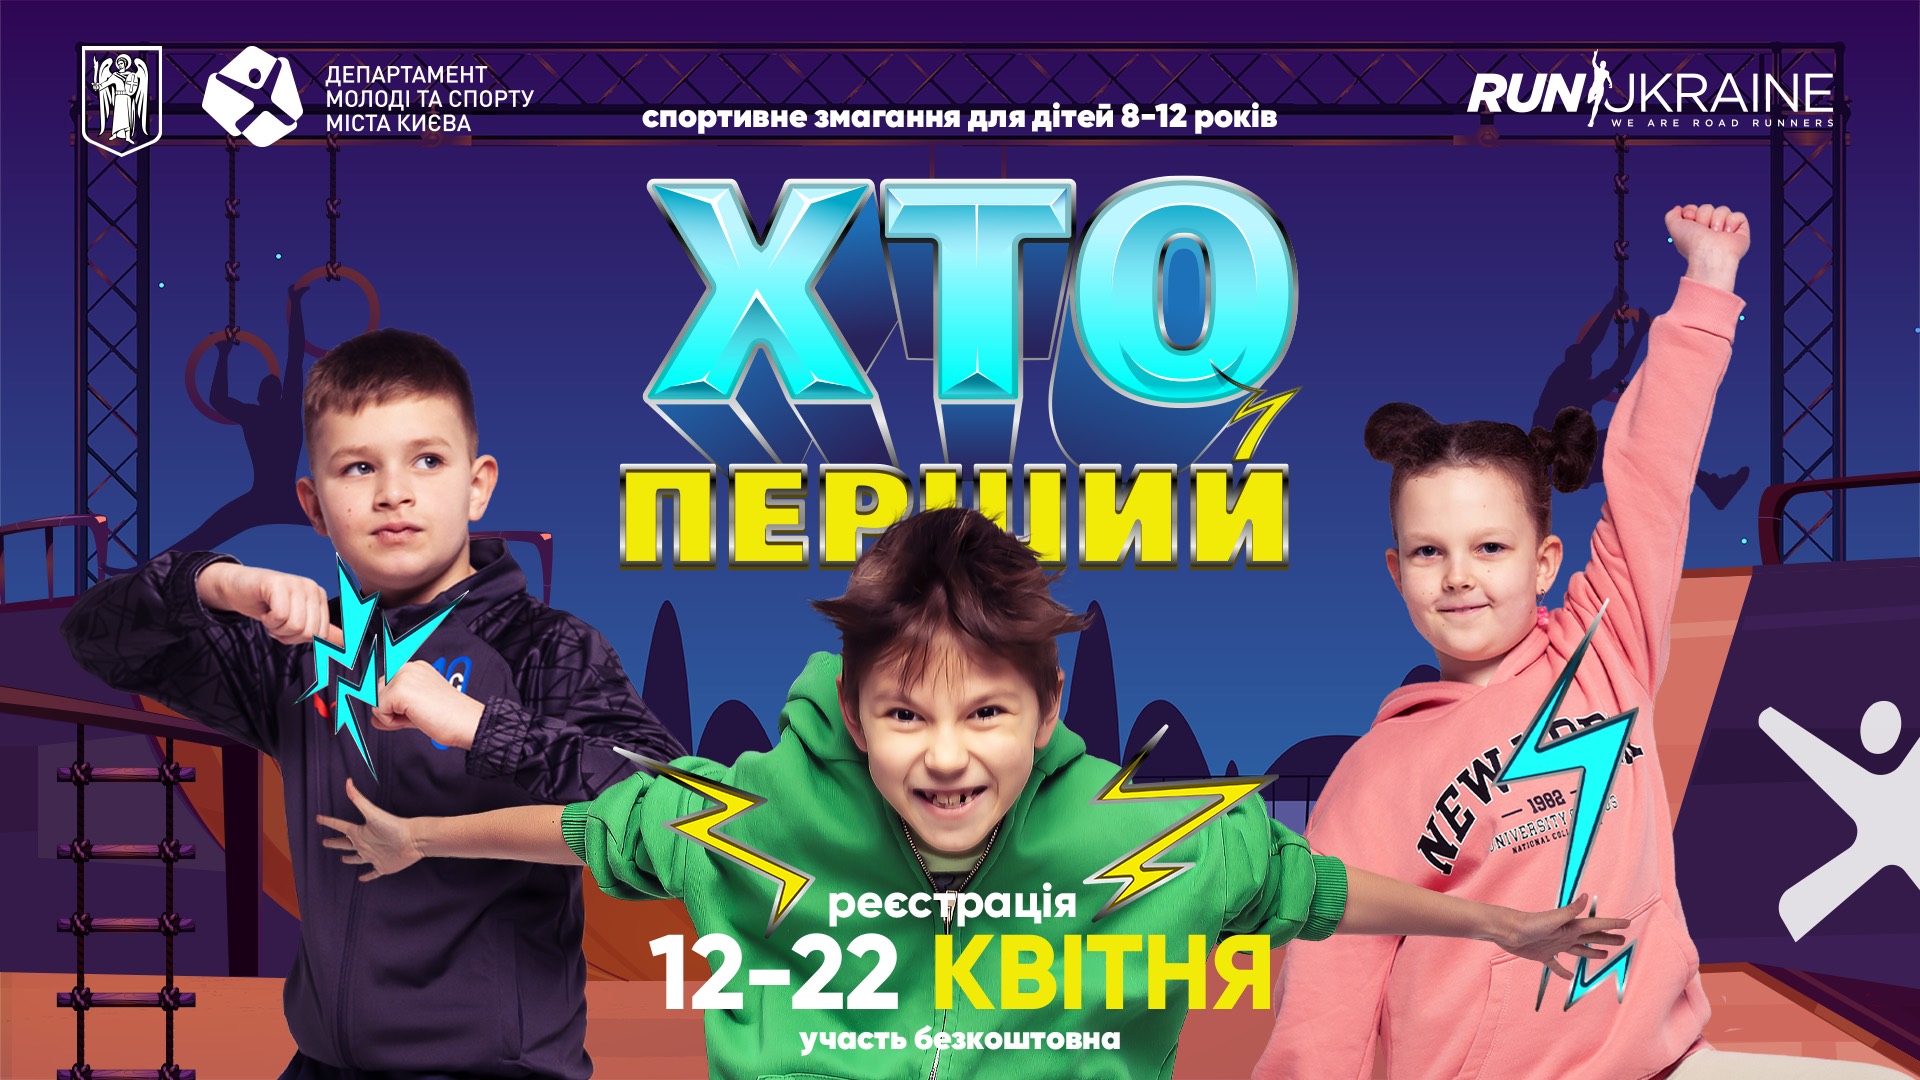 Хто перший: Run Ukraine збирає разом супергероїв. Реєстрацію розпочато